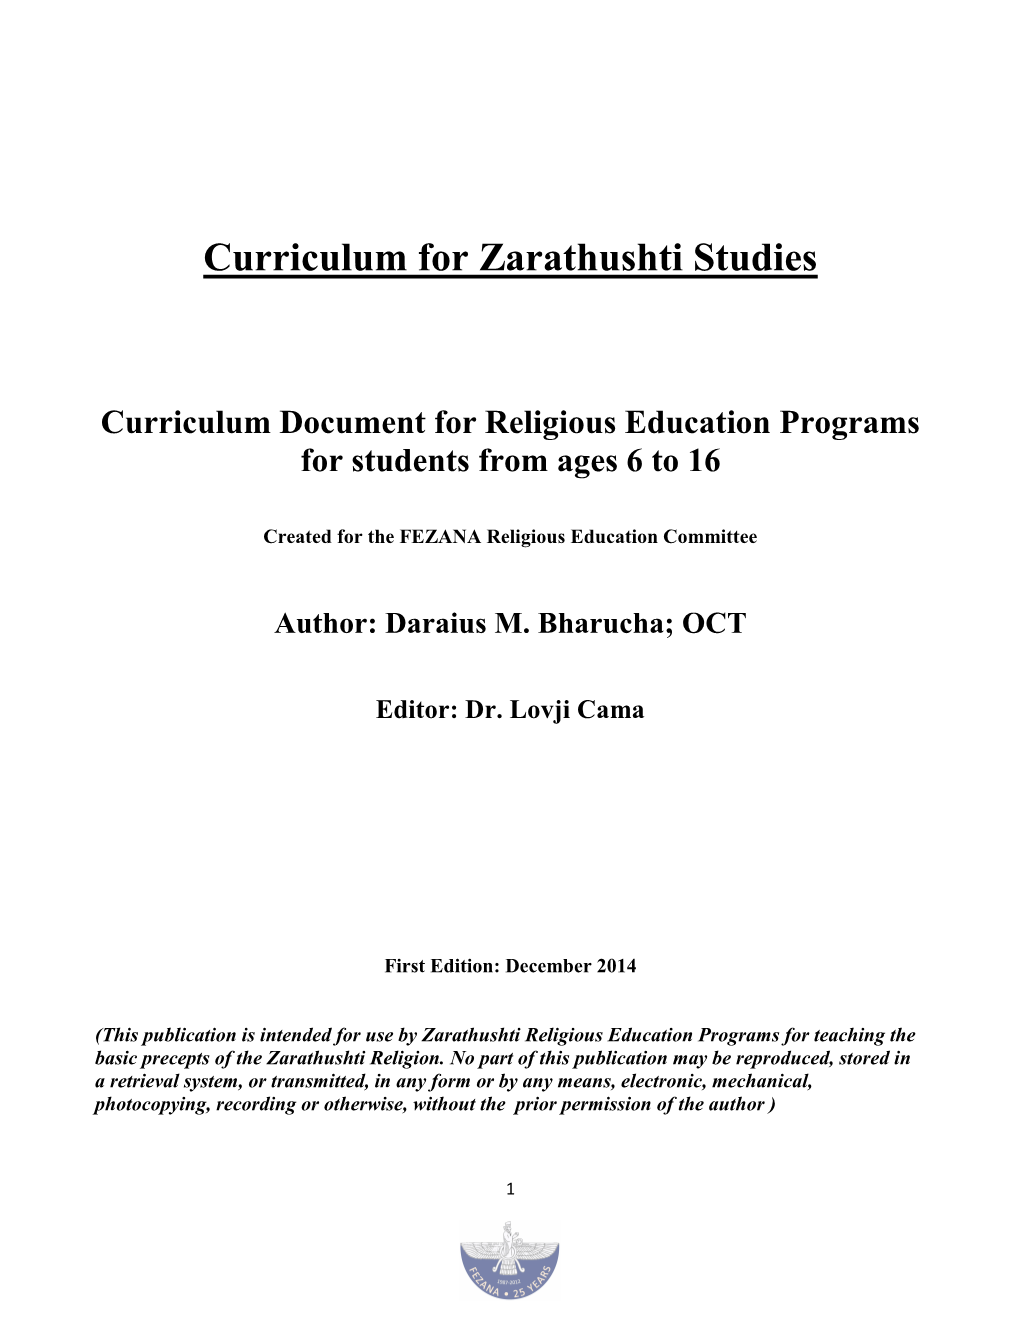 Curriculum for Zoroastrian Religious Studies